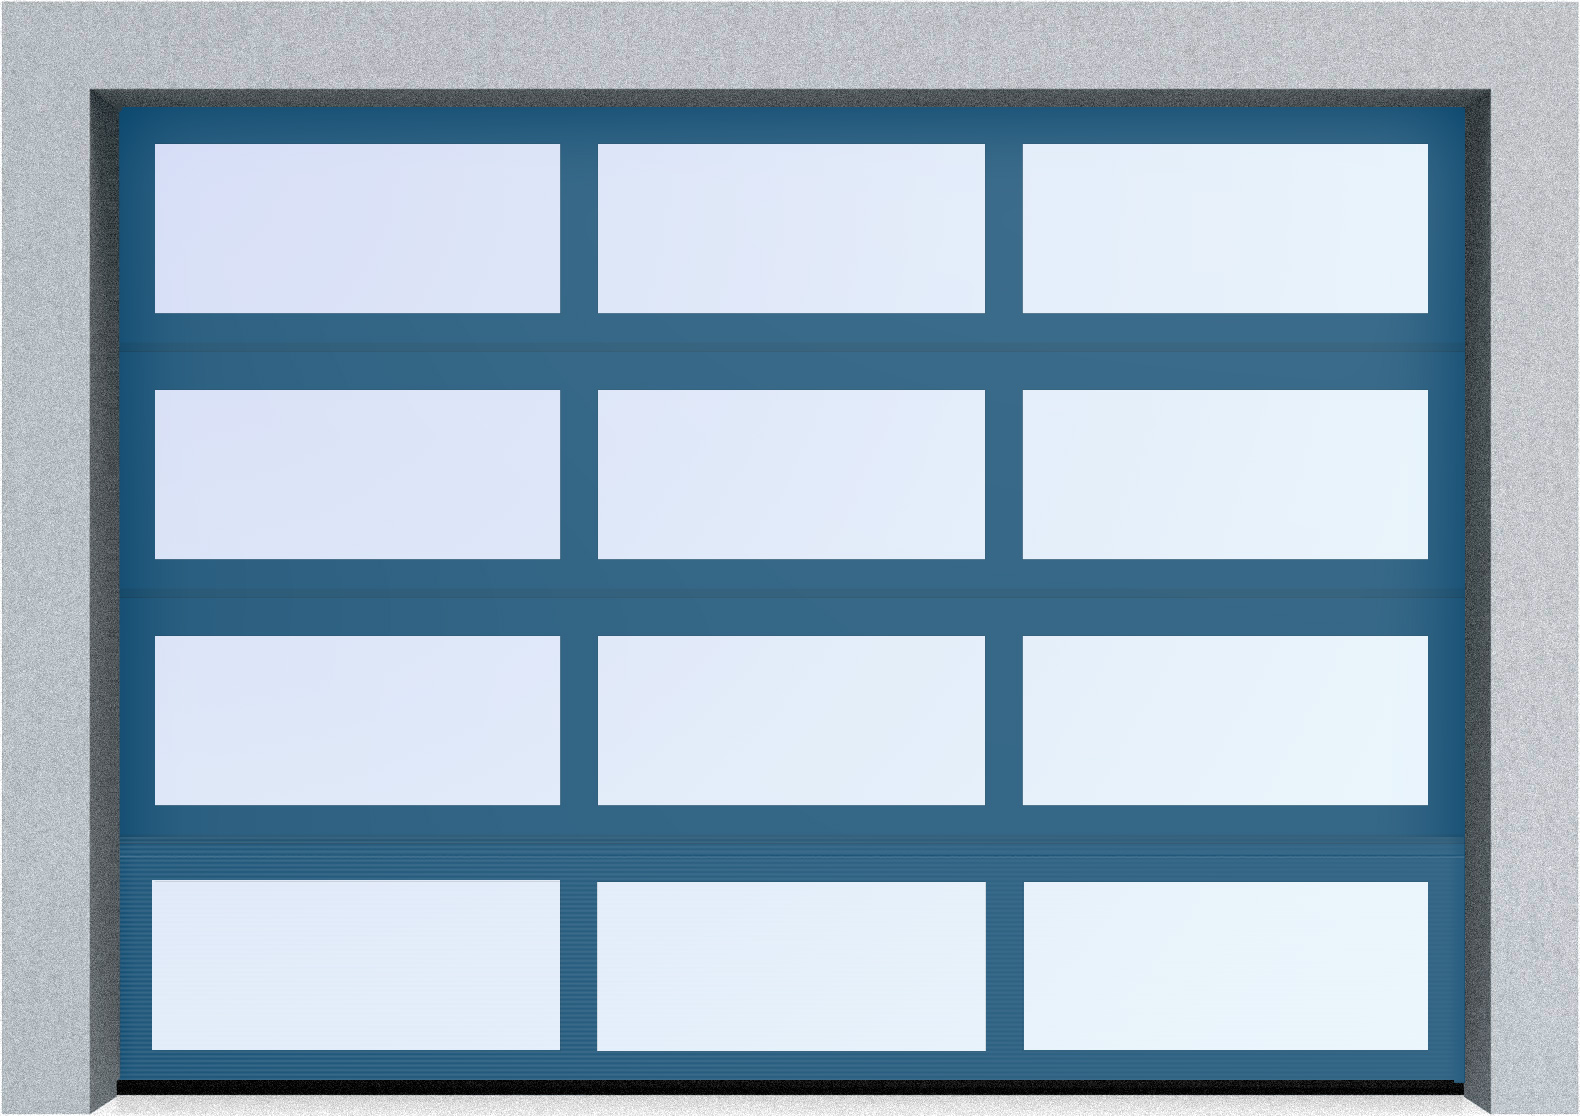  Секционные панорамные ворота серии AluTrend (АЛП) 2250х2375 нижняя панель стандартные цвета, фото 3 